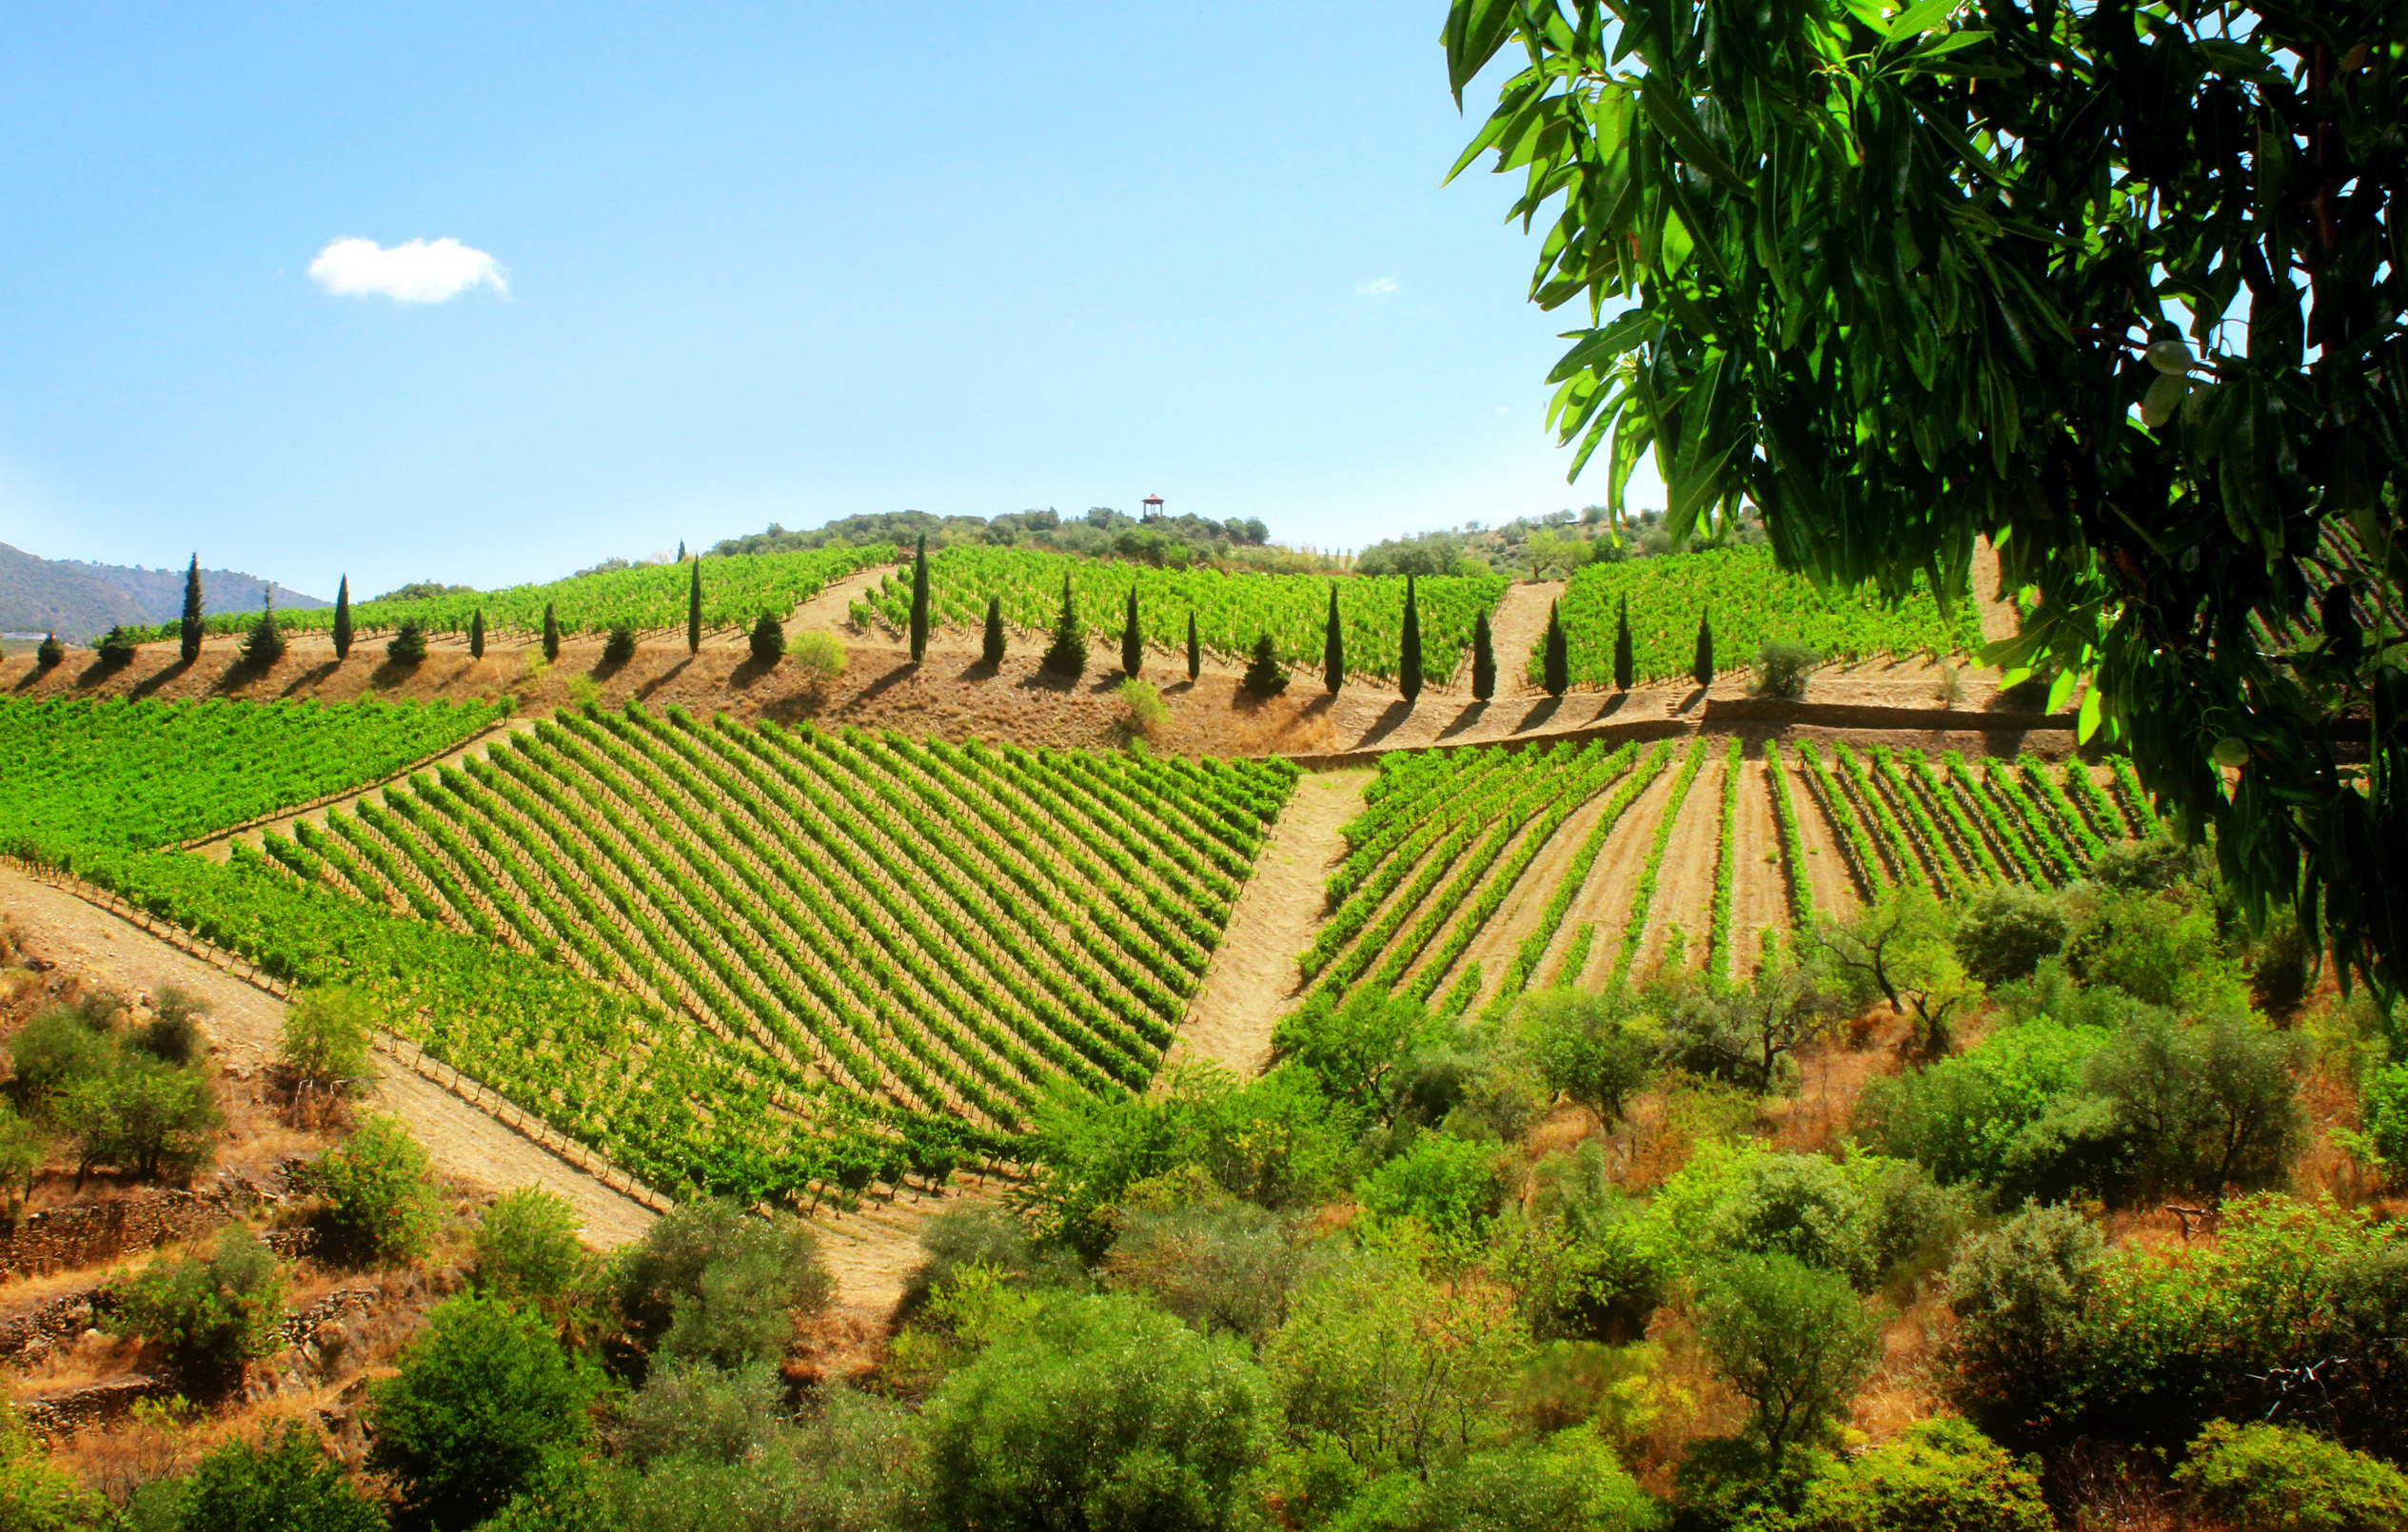 Vineyard in the douro valley - quinta de vargellas photo